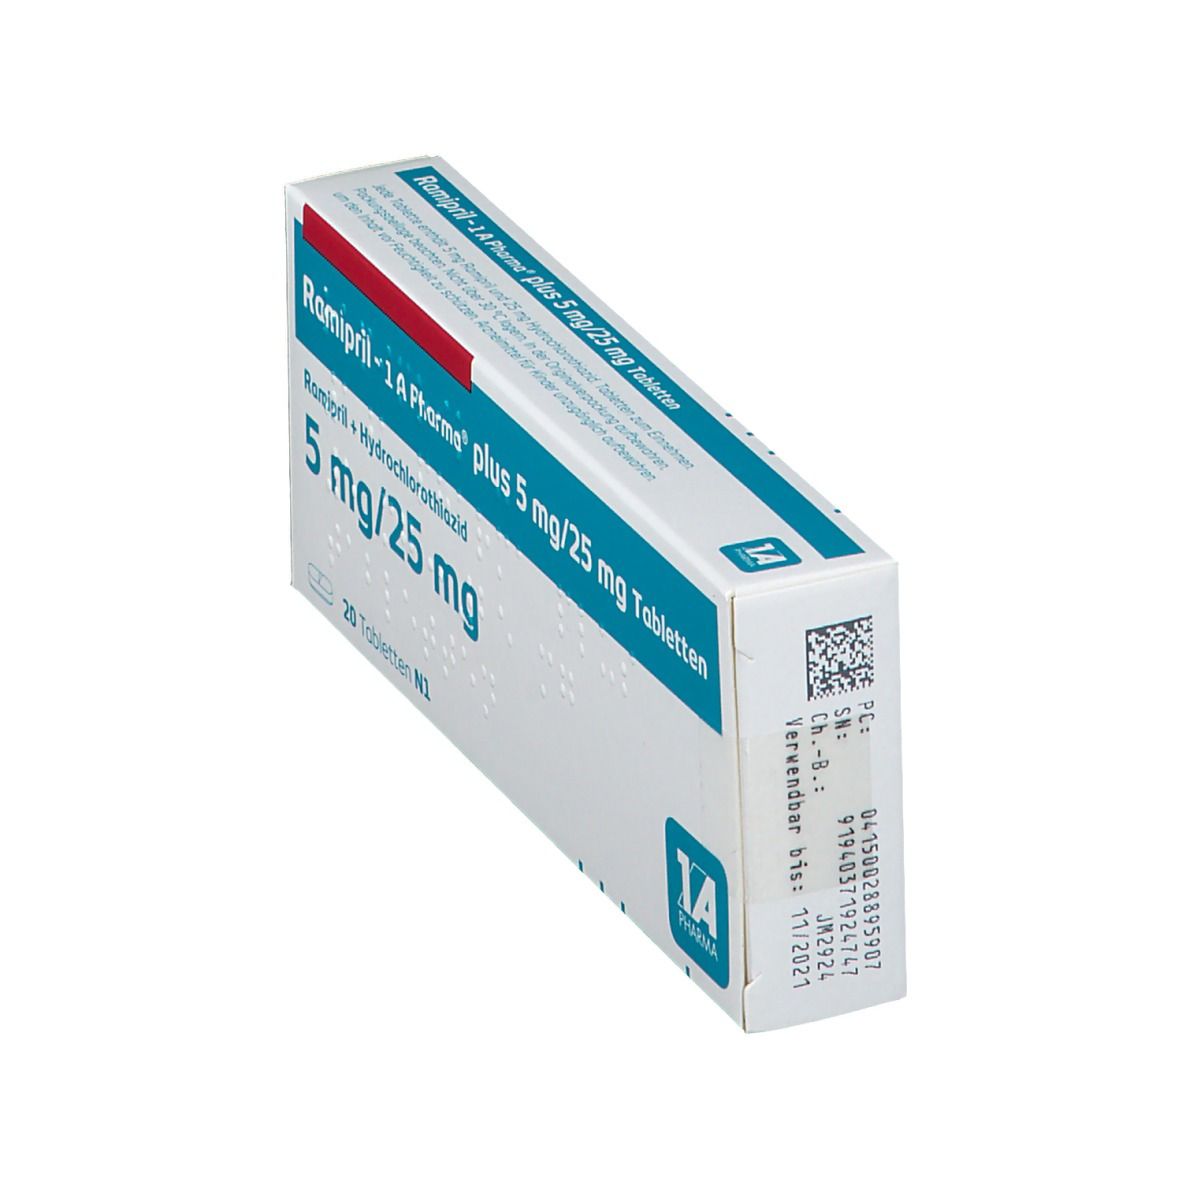 Ramipril - 1 A Pharma® plus 5 mg/25 mg